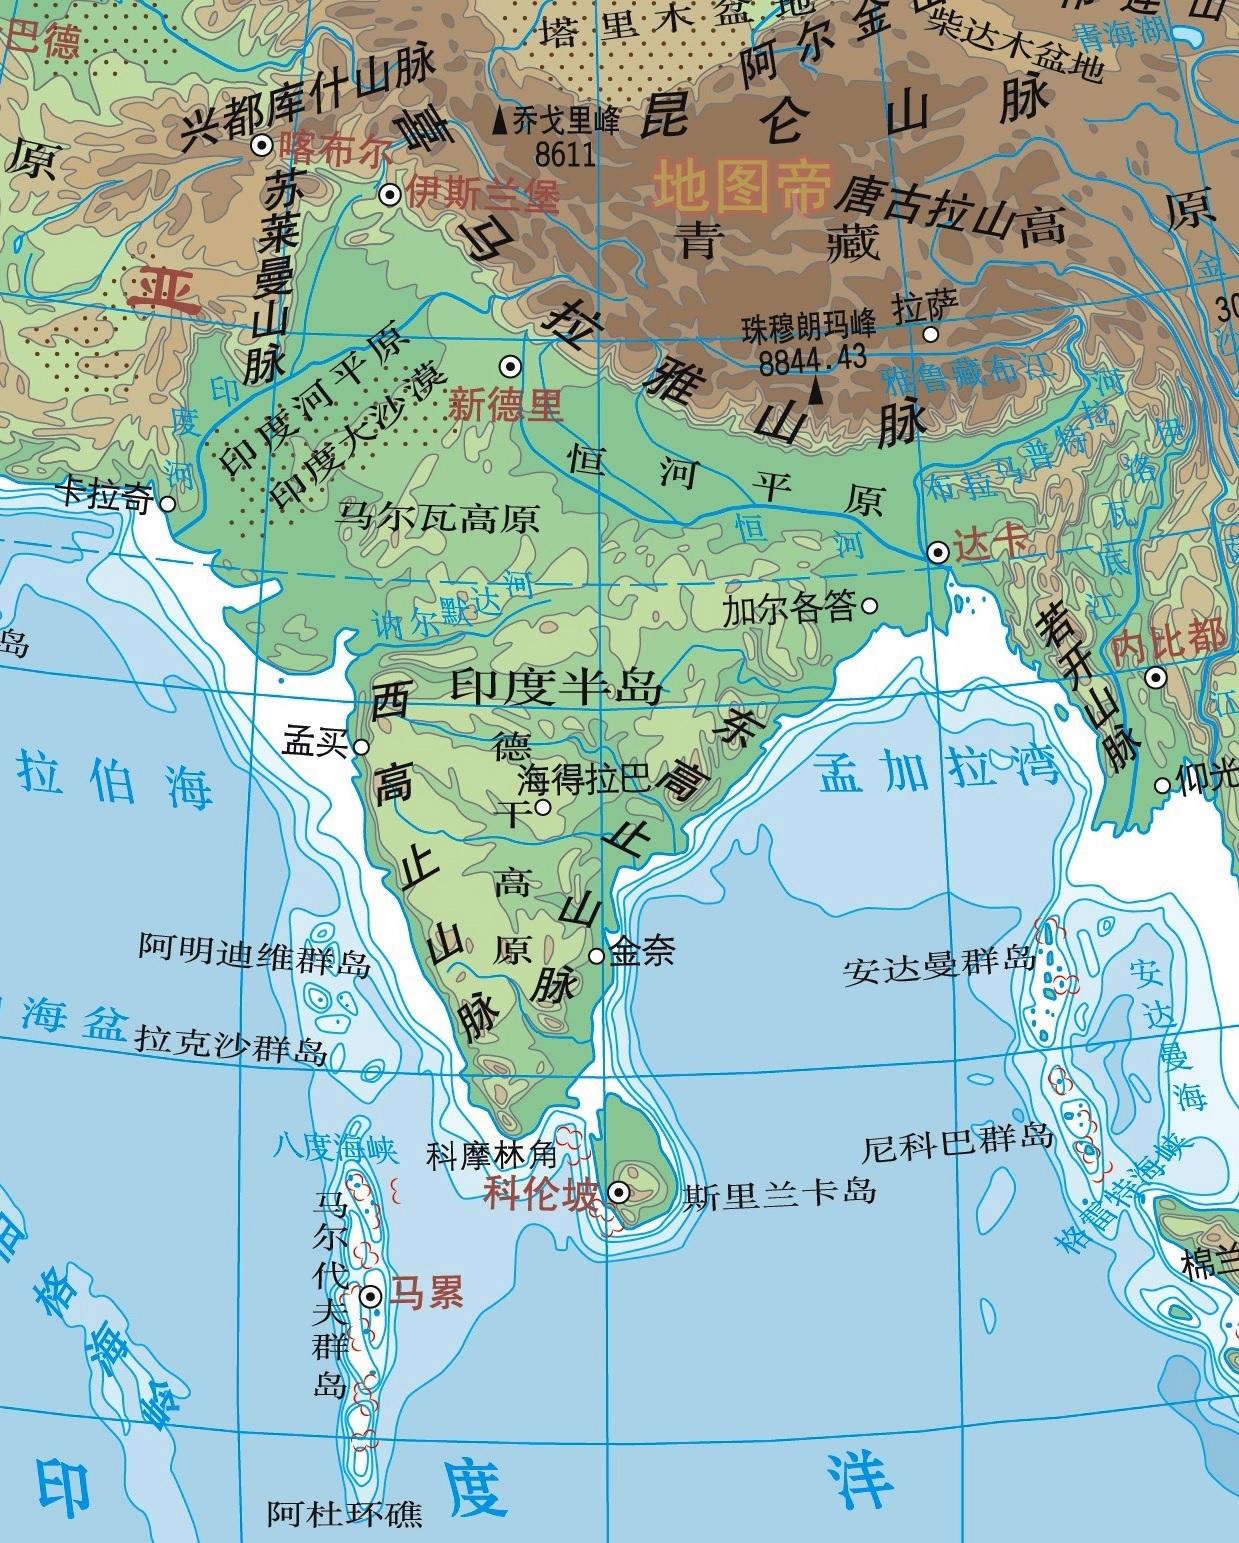 首发于微信公众号:地图帝 1,431 人 赞同了该文章 南亚 南亚有七个